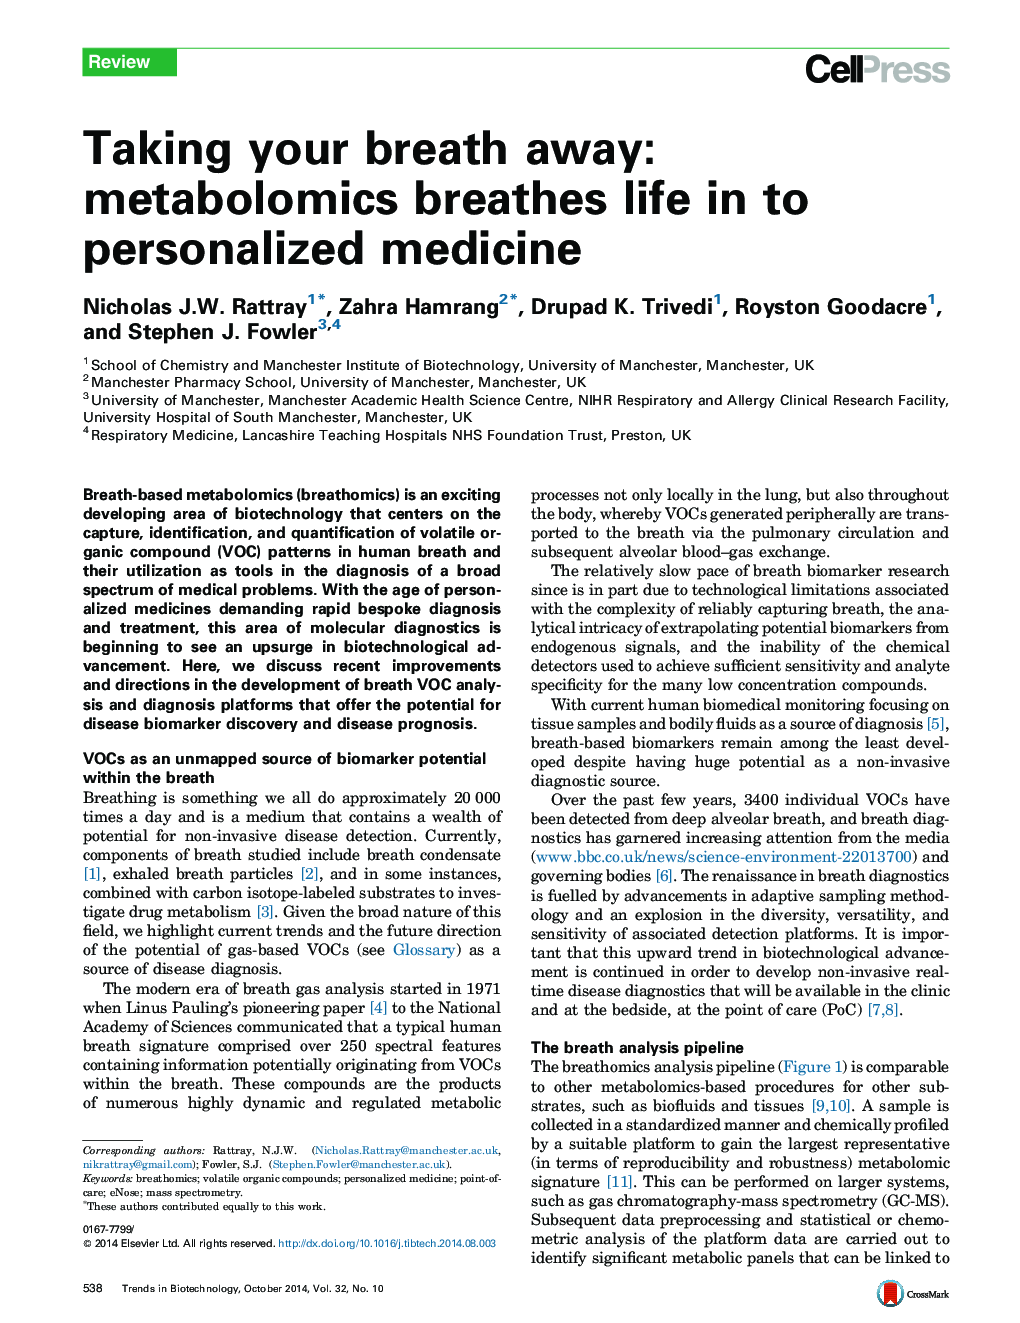 با در نظر گرفتن نفس خود را متوقف کنید: متابولومیک زندگی را به پزشکی شخصی تبدیل می کند 